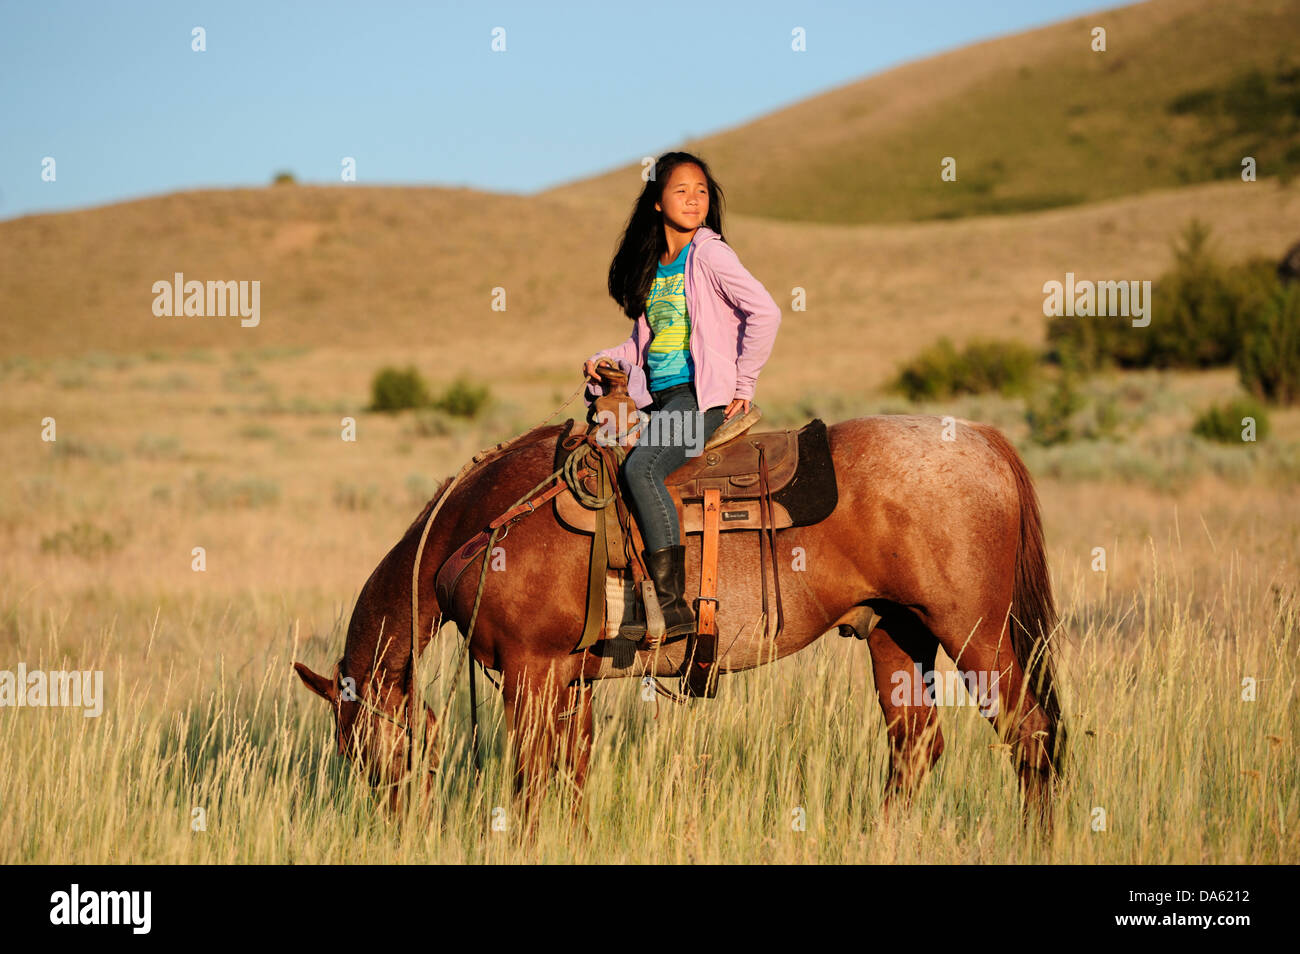 Pacific Northwest, Oregon, Stati Uniti d'America, Stati Uniti, America, equitazione, escursioni a cavallo, sport, cavallo, ranch, dude, ragazza, cinese, erba, tour Foto Stock